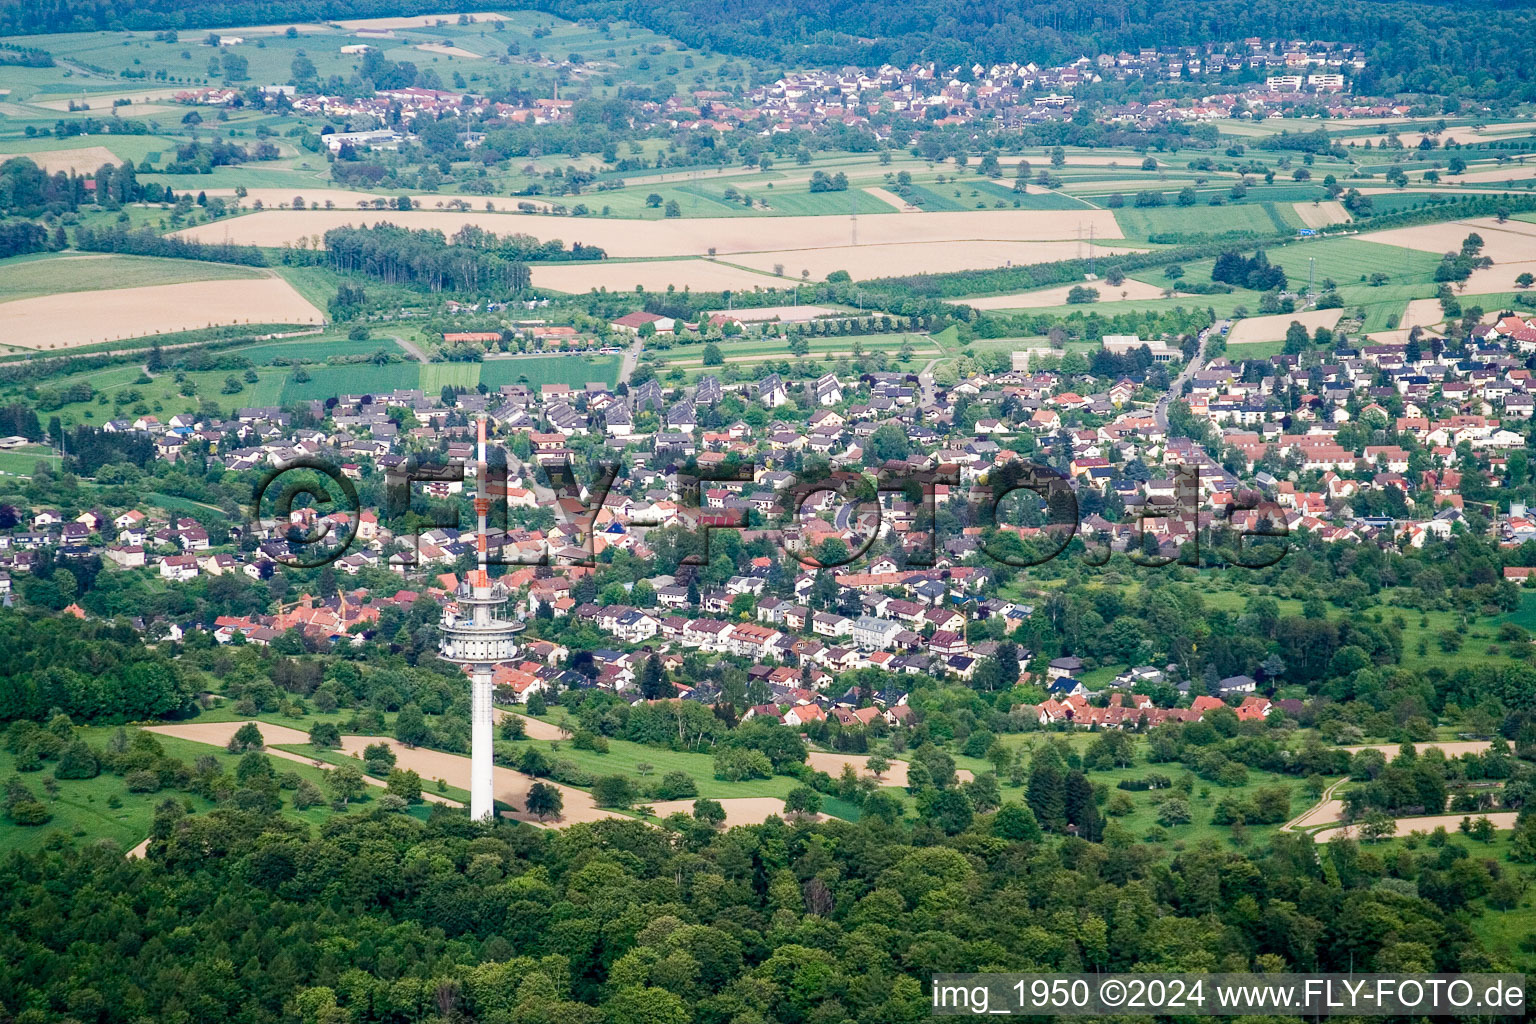 Luftbild von Ortsansicht der Straßen und Häuser der Wohngebiete im Ortsteil Grünwettersbach in Karlsruhe im Bundesland Baden-Württemberg, Deutschland